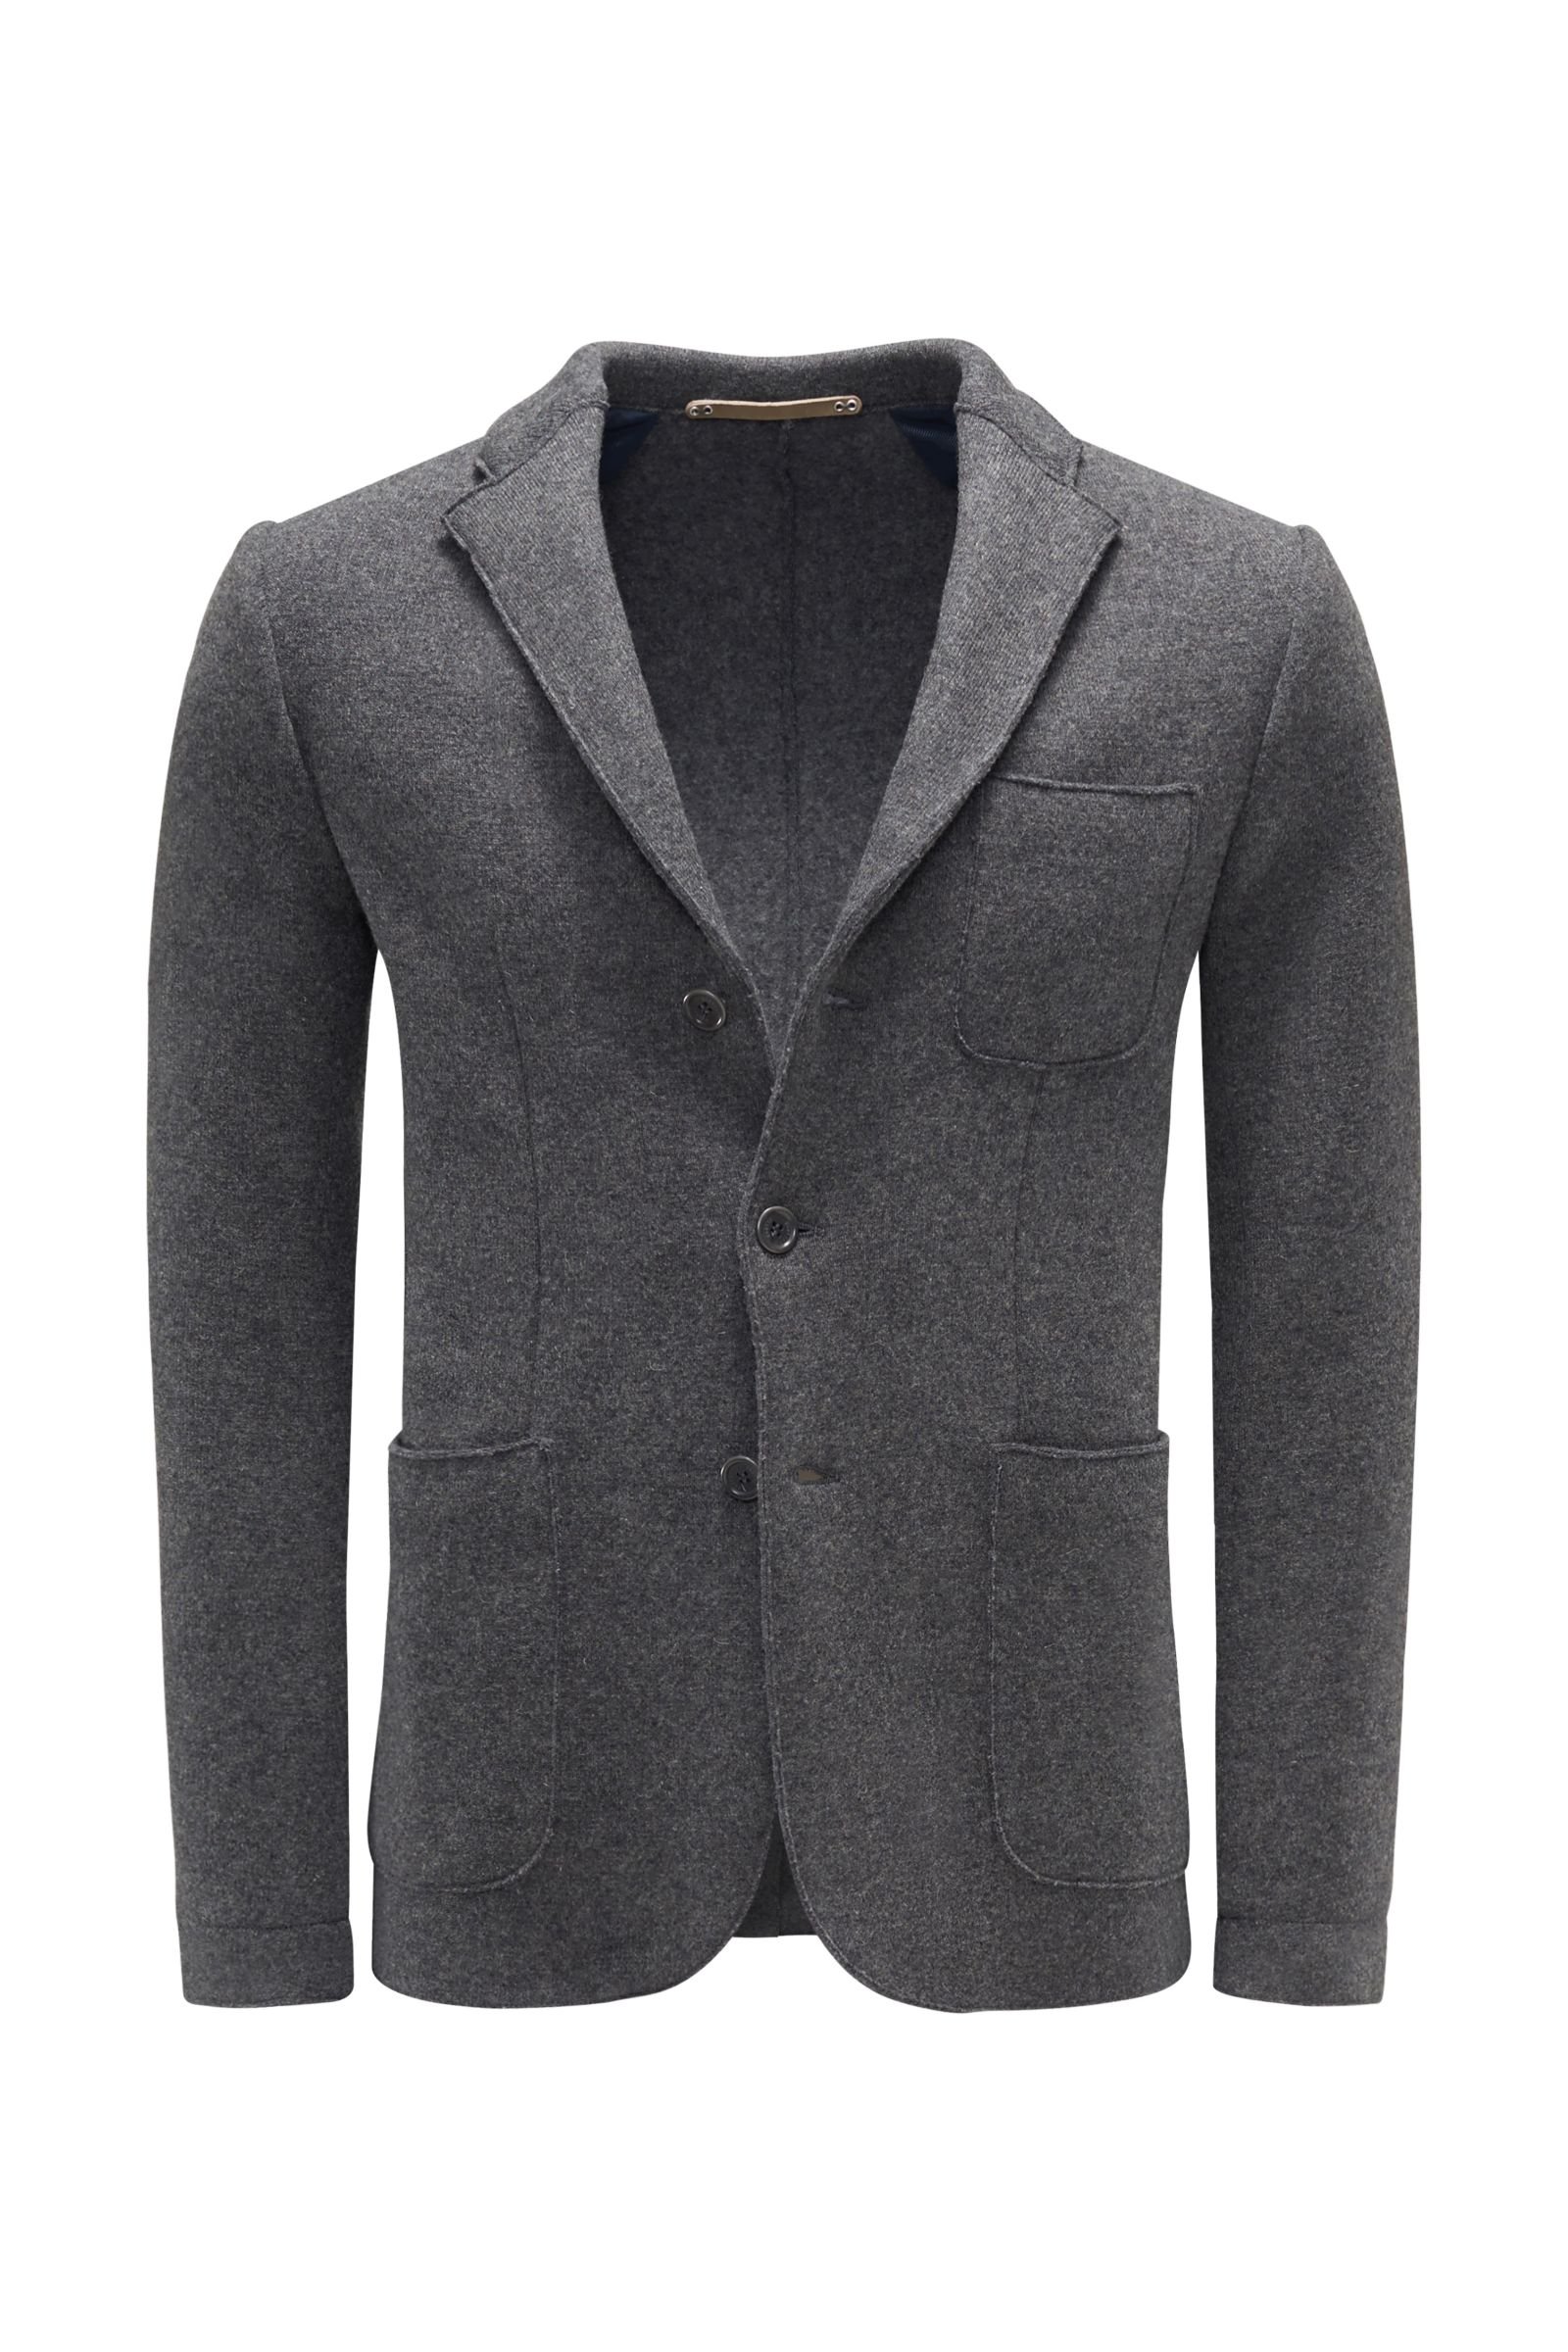 Knit blazer dark grey